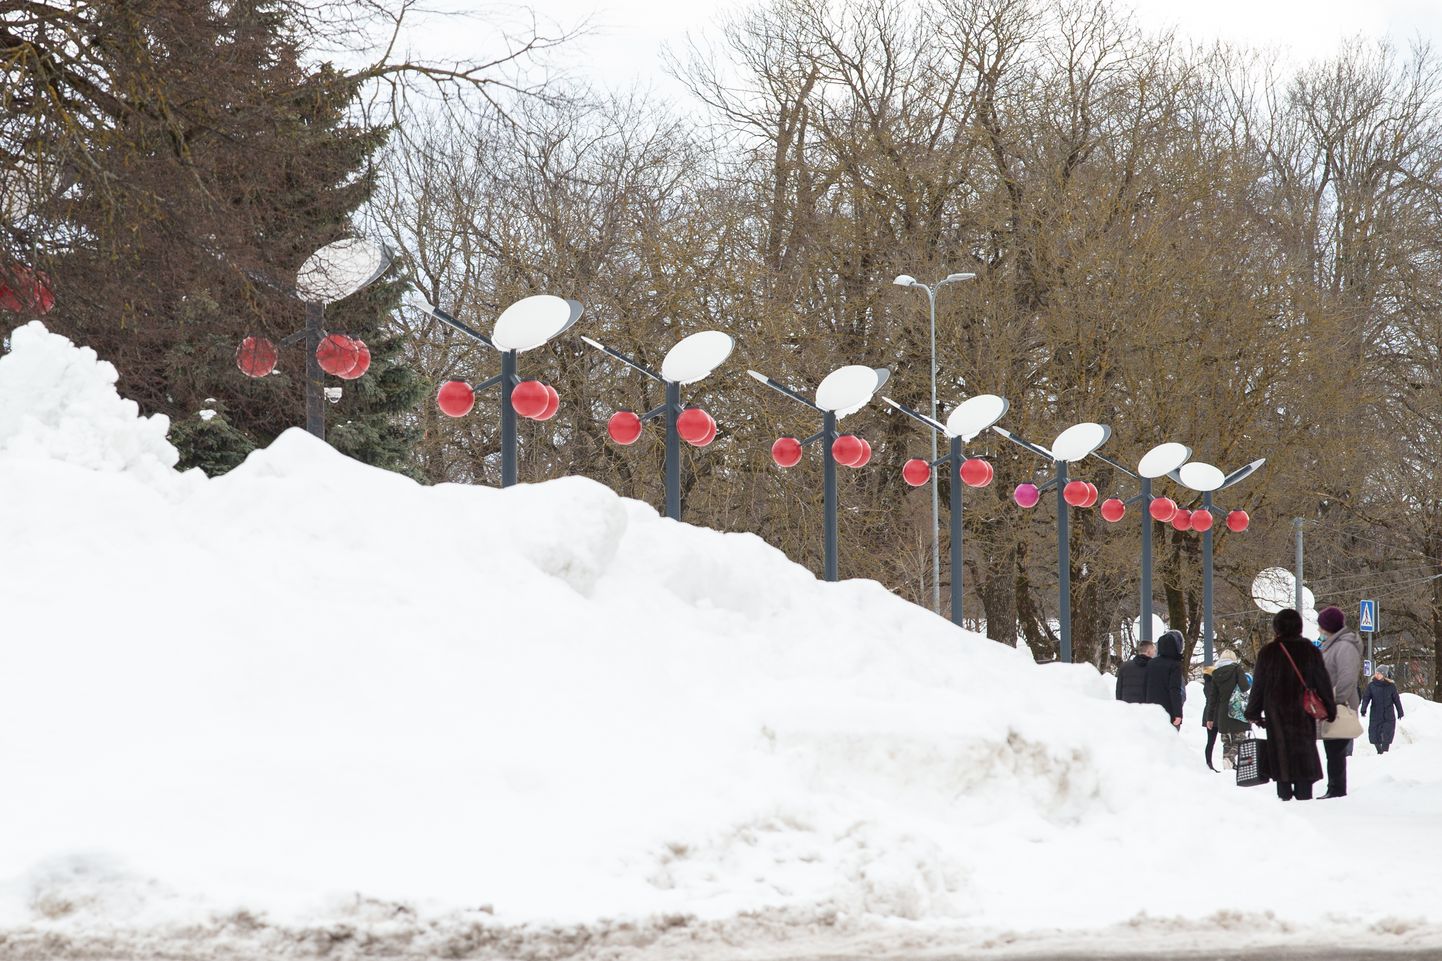 Йыхви оказался нынешней зимой самым снежным местом в Эстонии. Однако уже почти две недели заваленные снегом улицы вызывают критику жителей и волостных чиновников в адрес ухаживающего за дорогами "N&V", в свою очередь, пригрозившего вообще отказаться от договора.